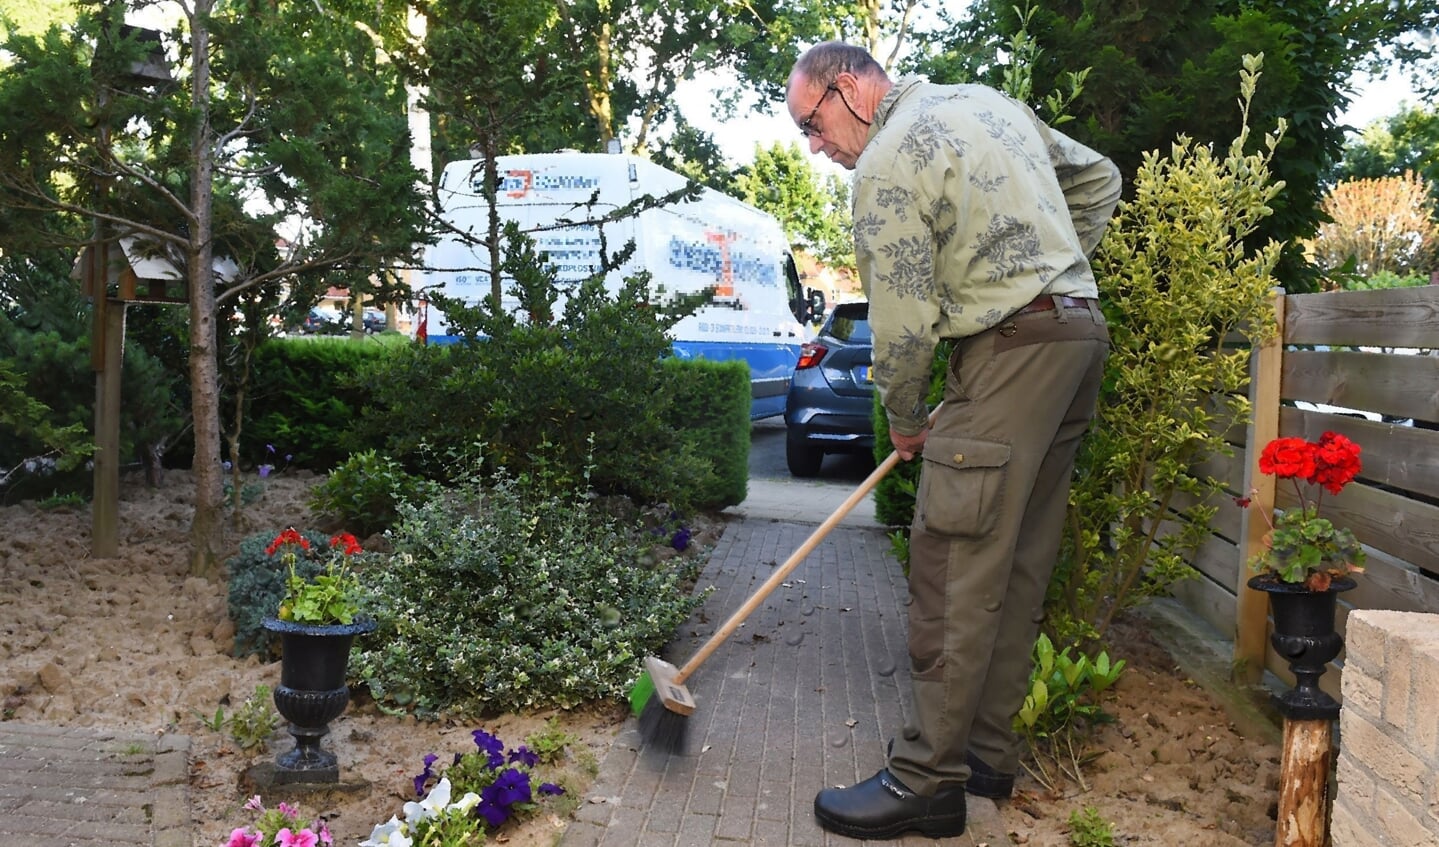 Bennie Straub aan het werk in de tuin en de bus. Foto: Roel Kleinpenning